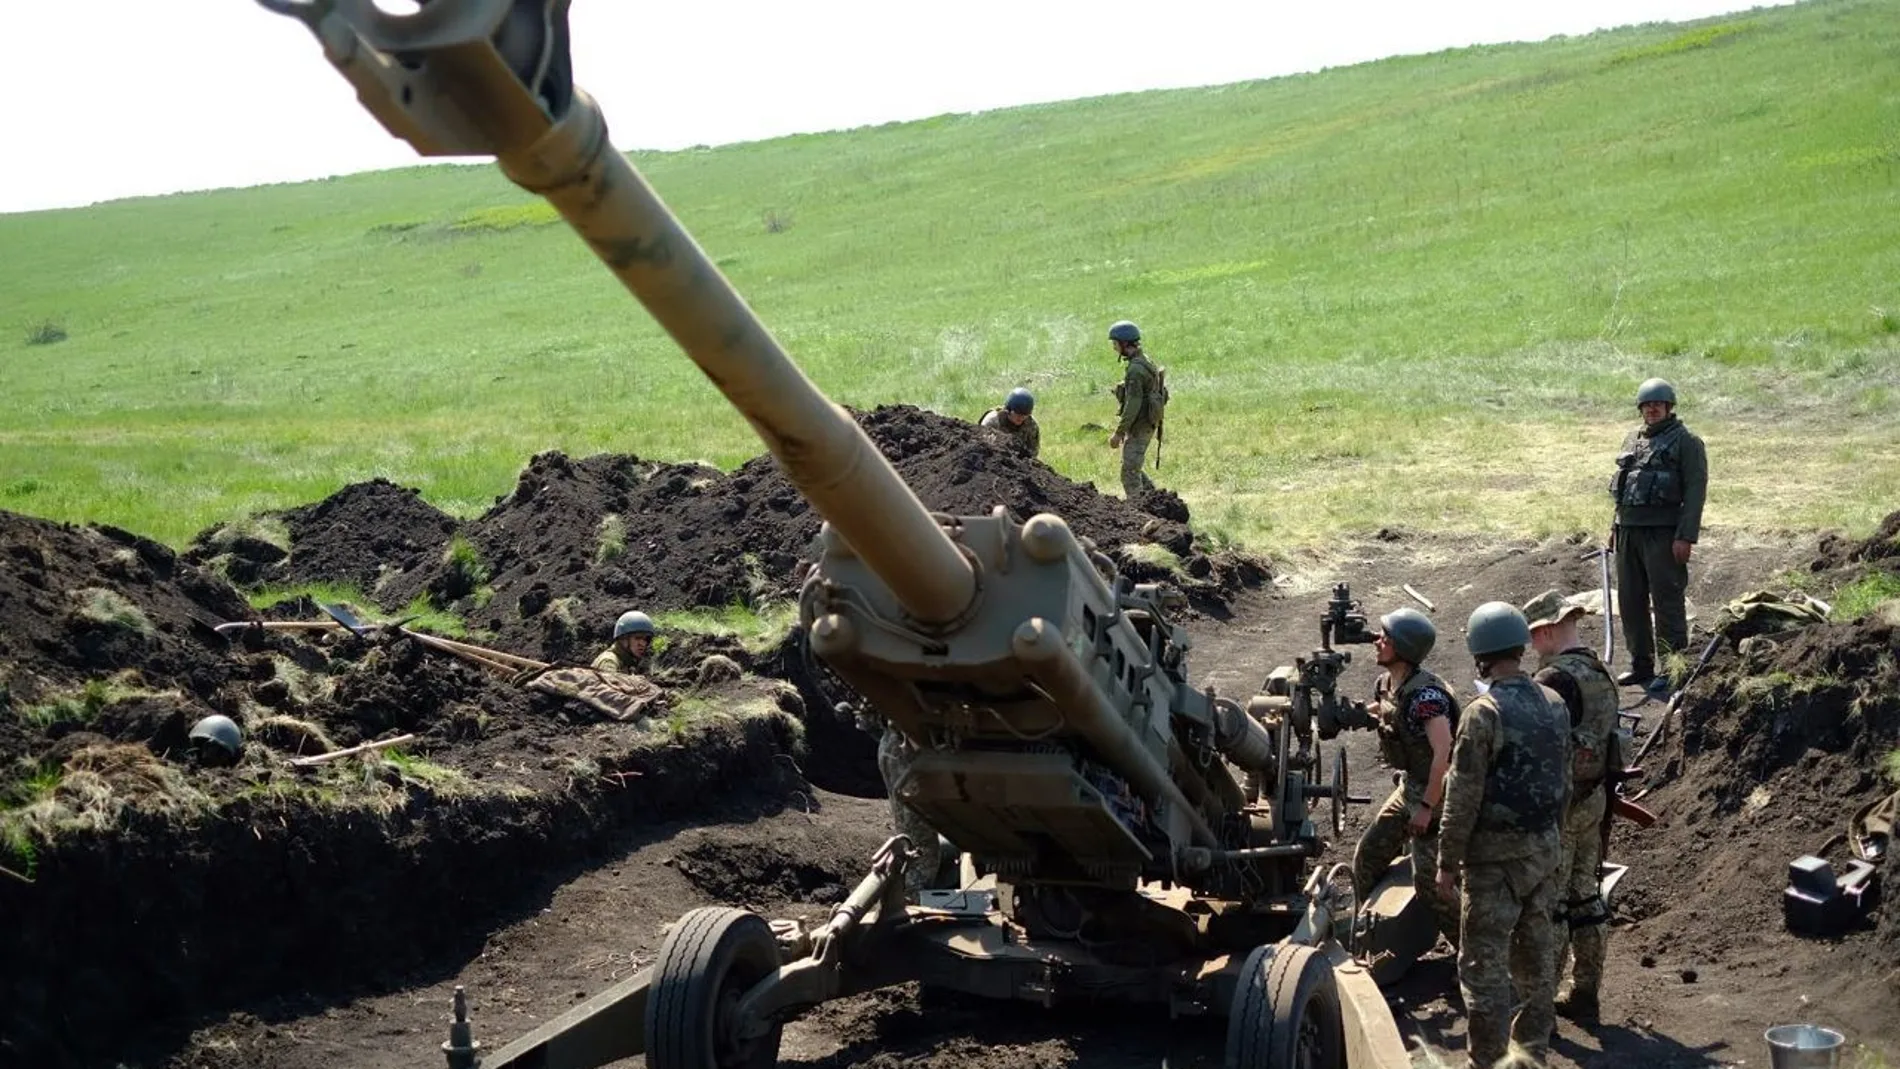 Los obuses M777 estadounidenses hoy usado por las tropas ucranianas